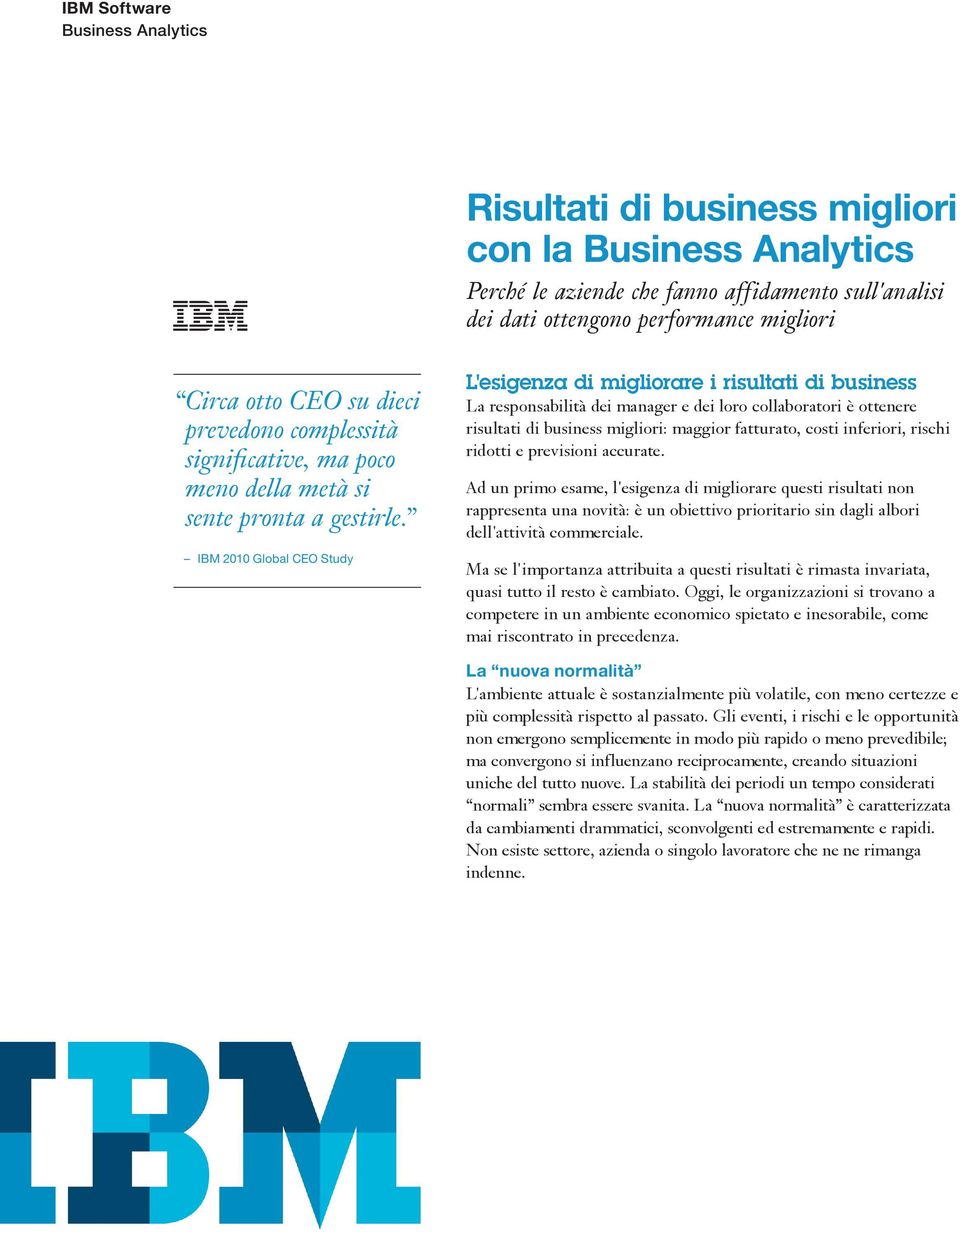 IBM 2010 Global CEO Study L'esigenza di migliorare i risultati di business La responsabilità dei manager e dei loro collaboratori è ottenere risultati di business migliori: maggior fatturato, costi